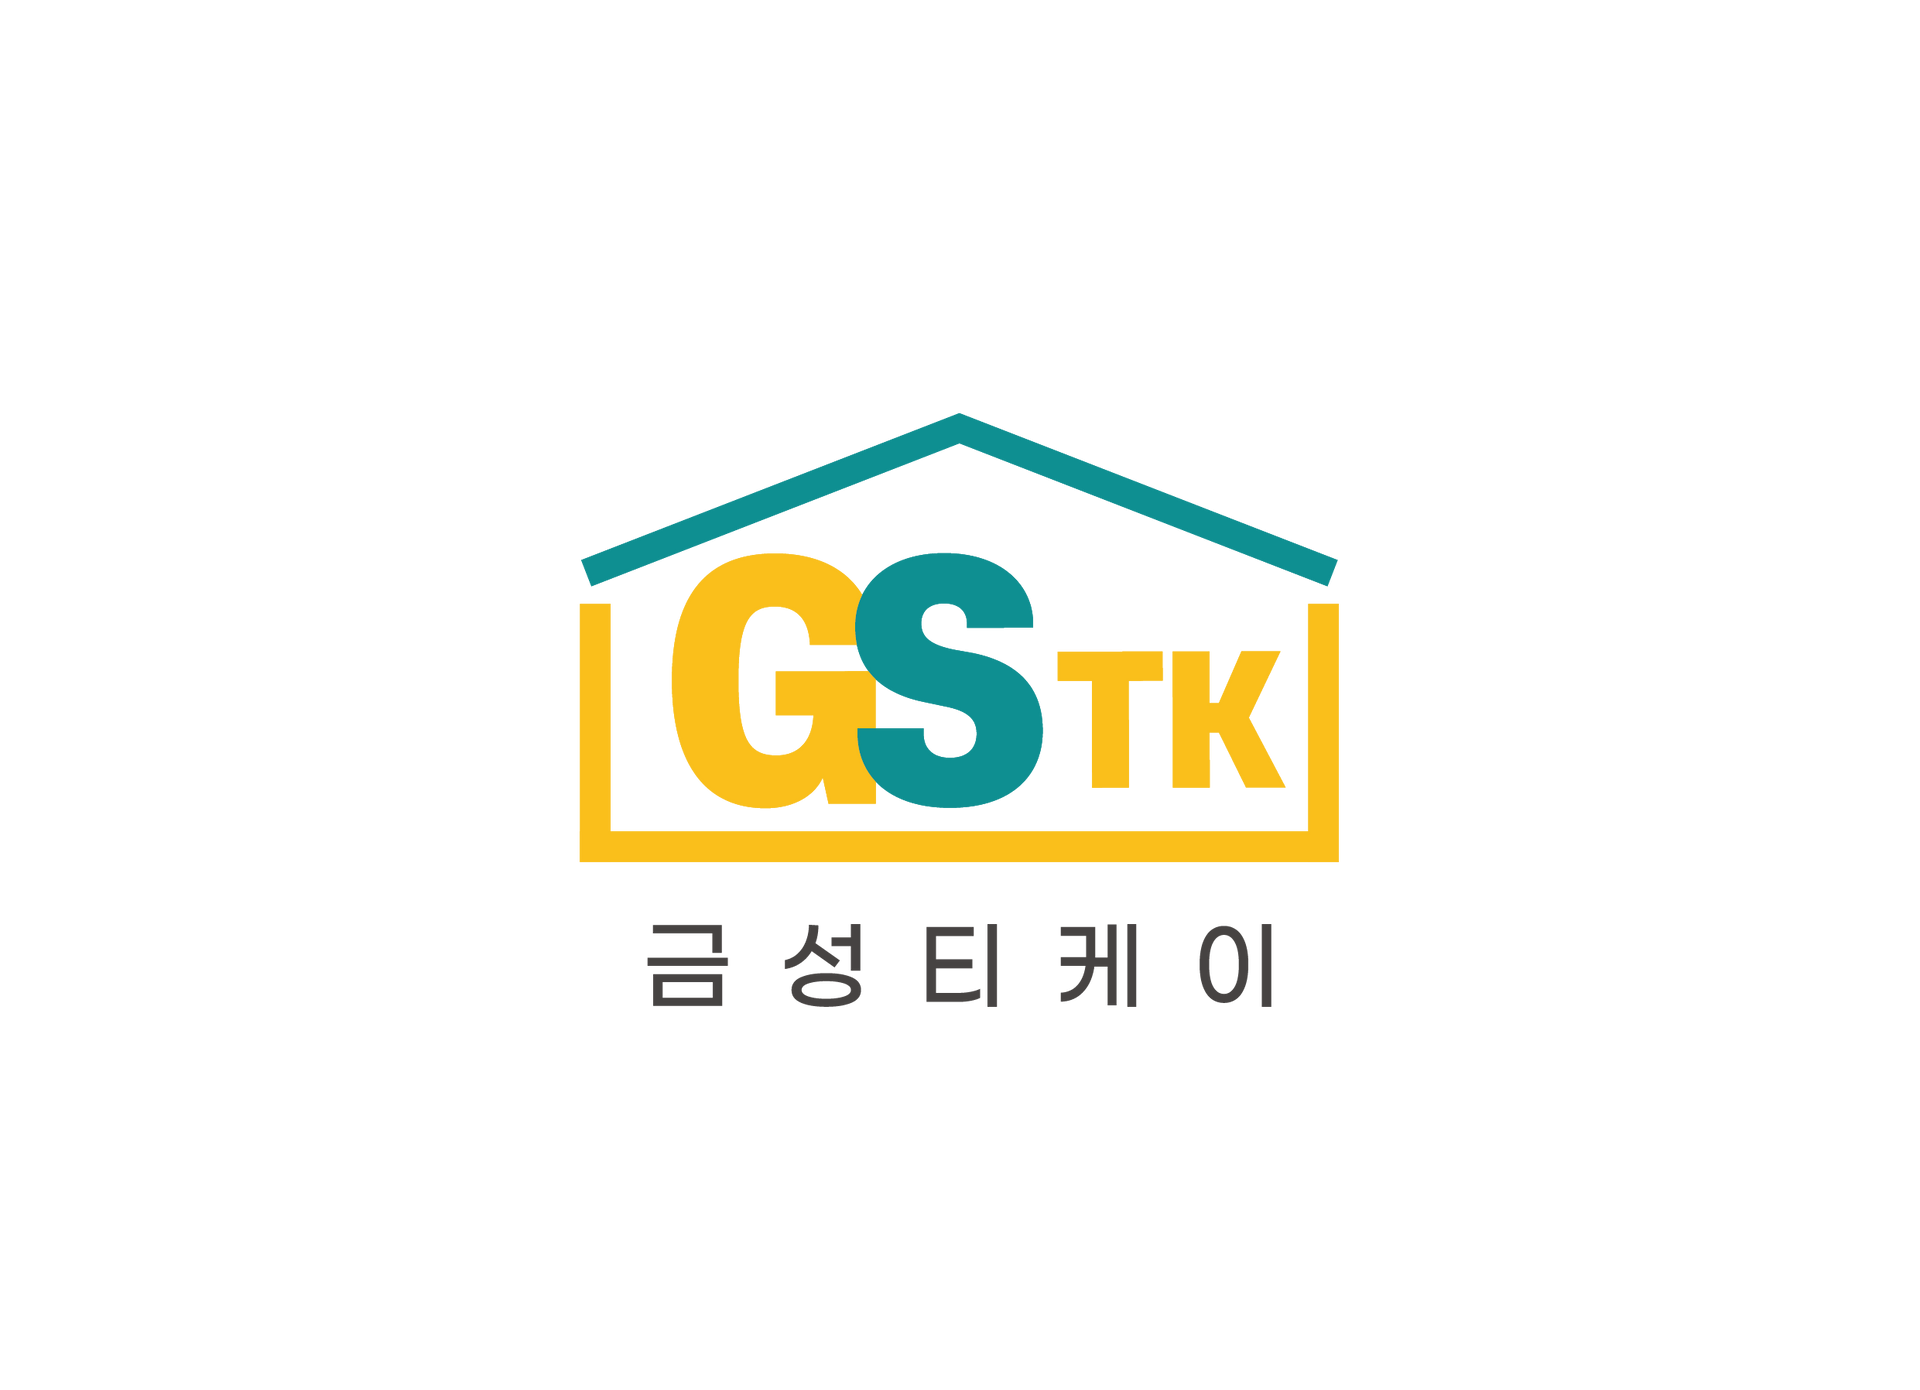 GS-TK CO.,LTD logo